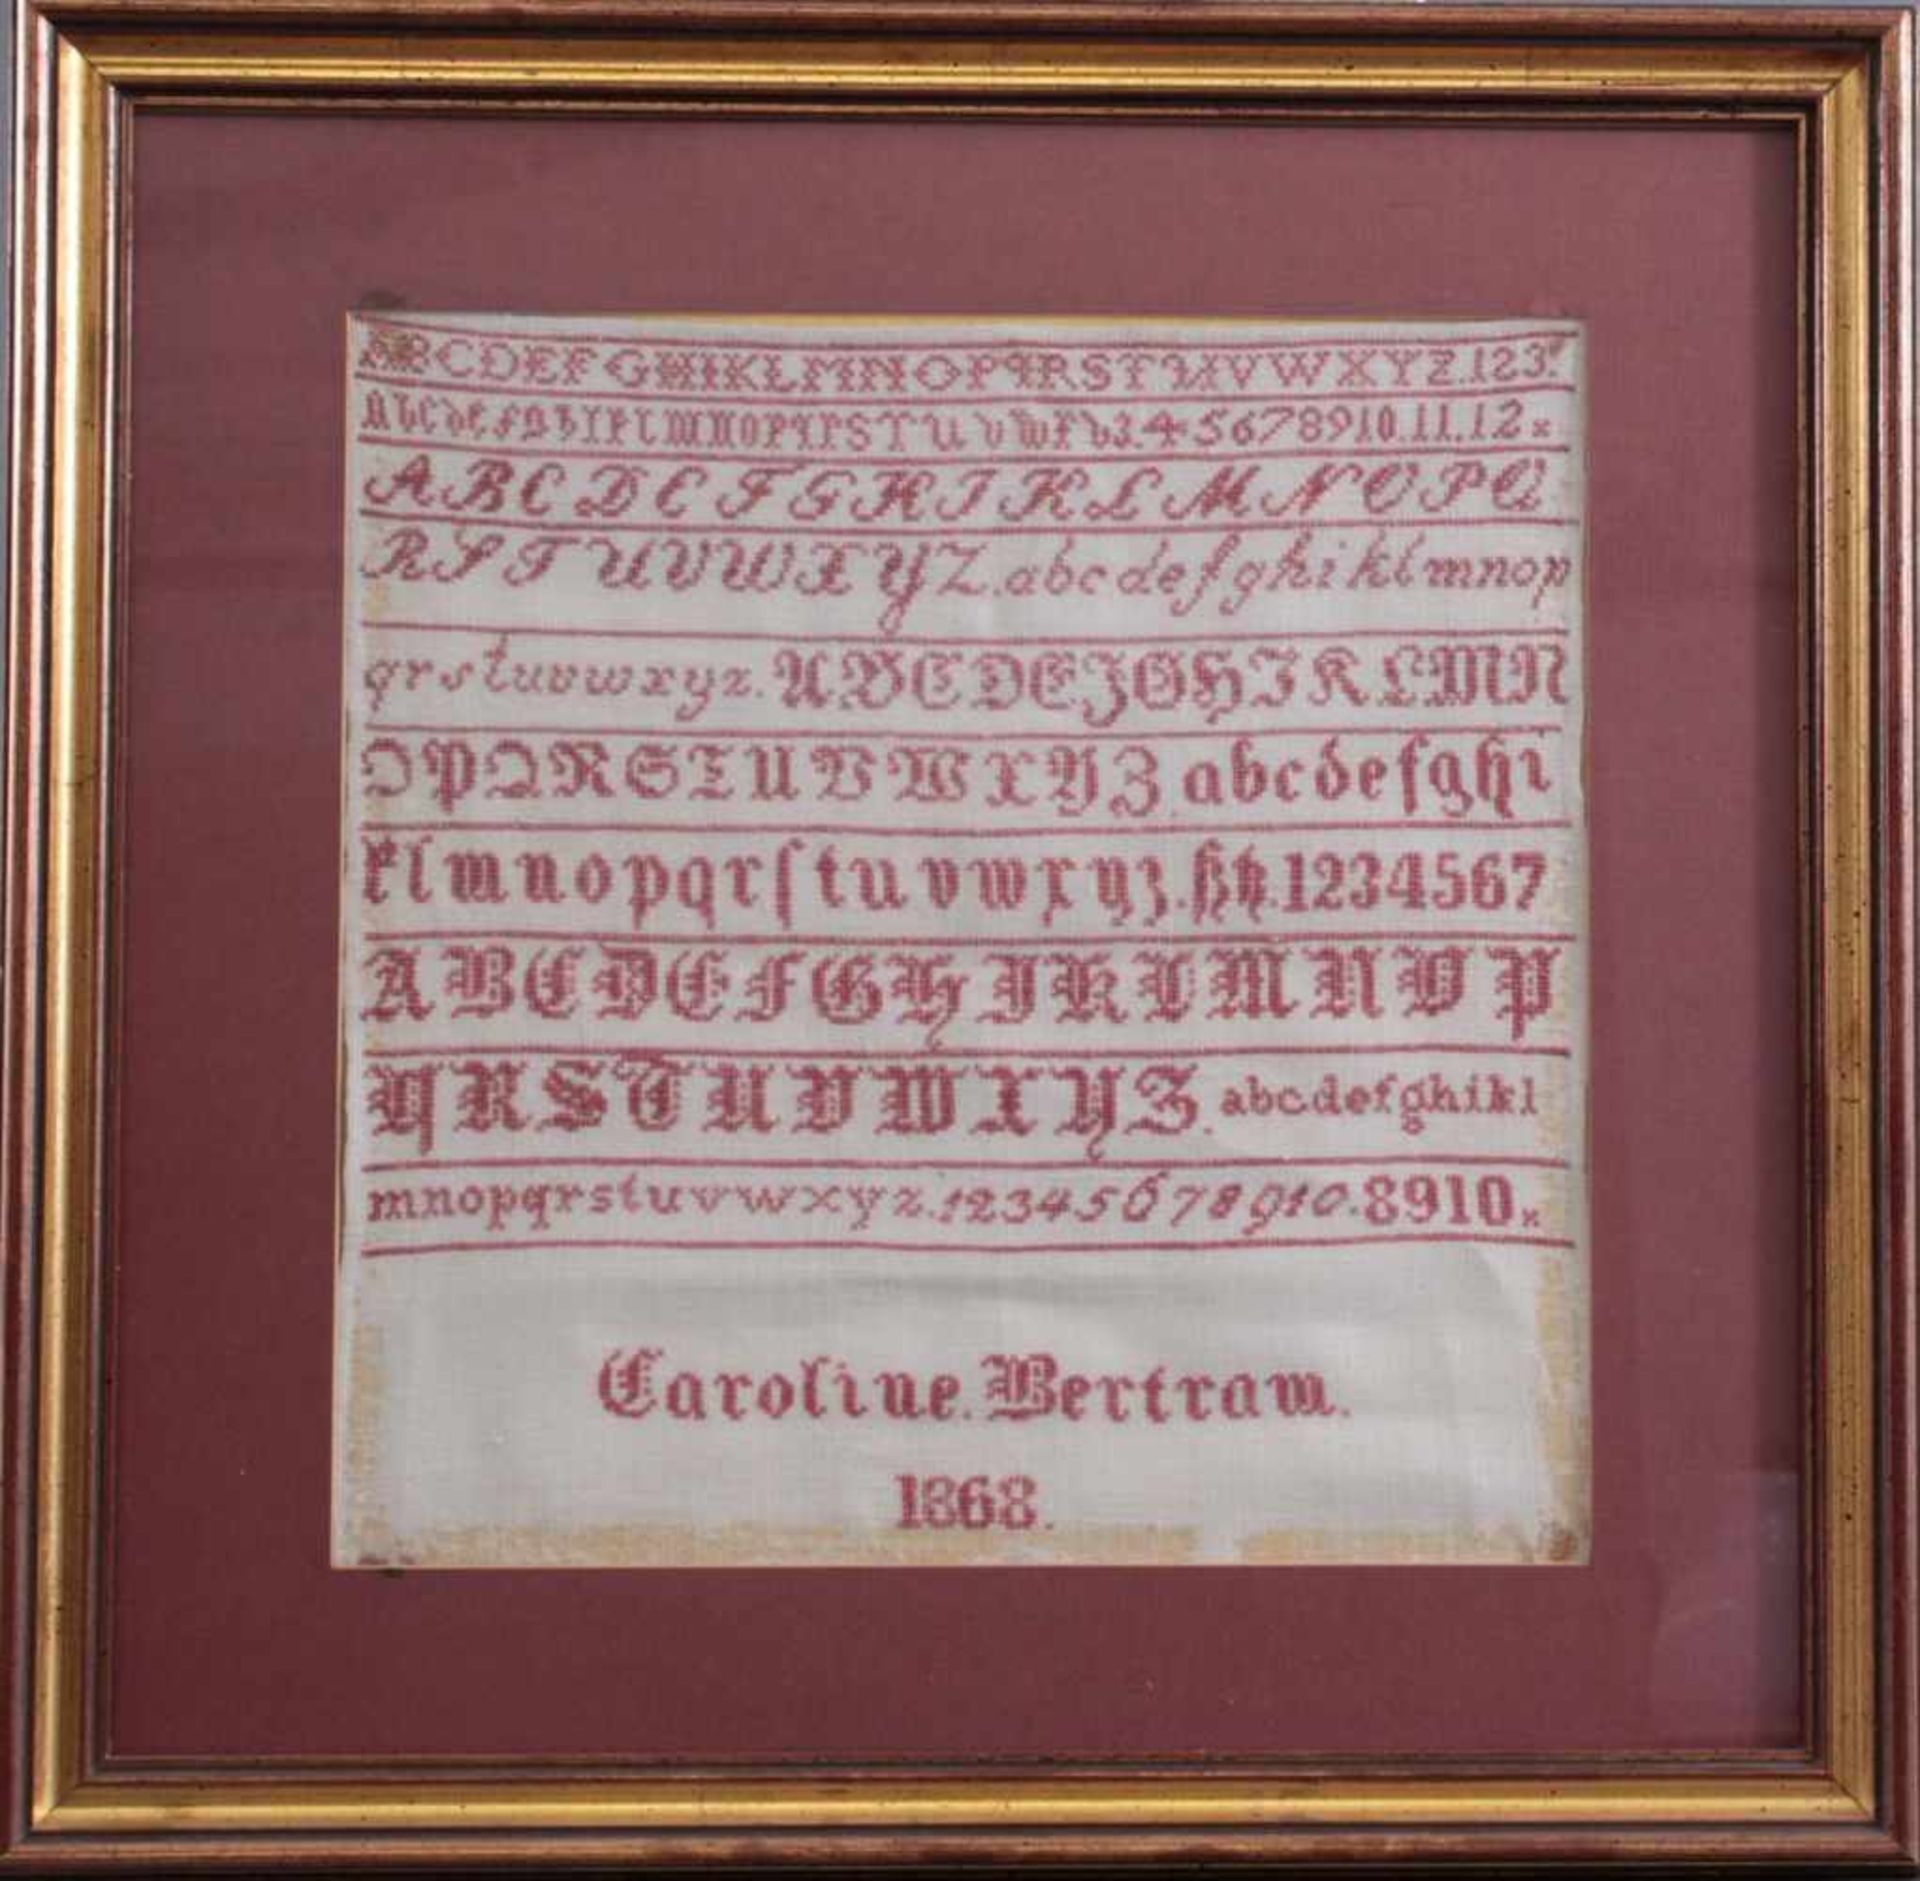 Stickbild von 1868Leinen mit rotem Faden, Alphabet und Zahlen, bezeichnet Caroline Bertram,